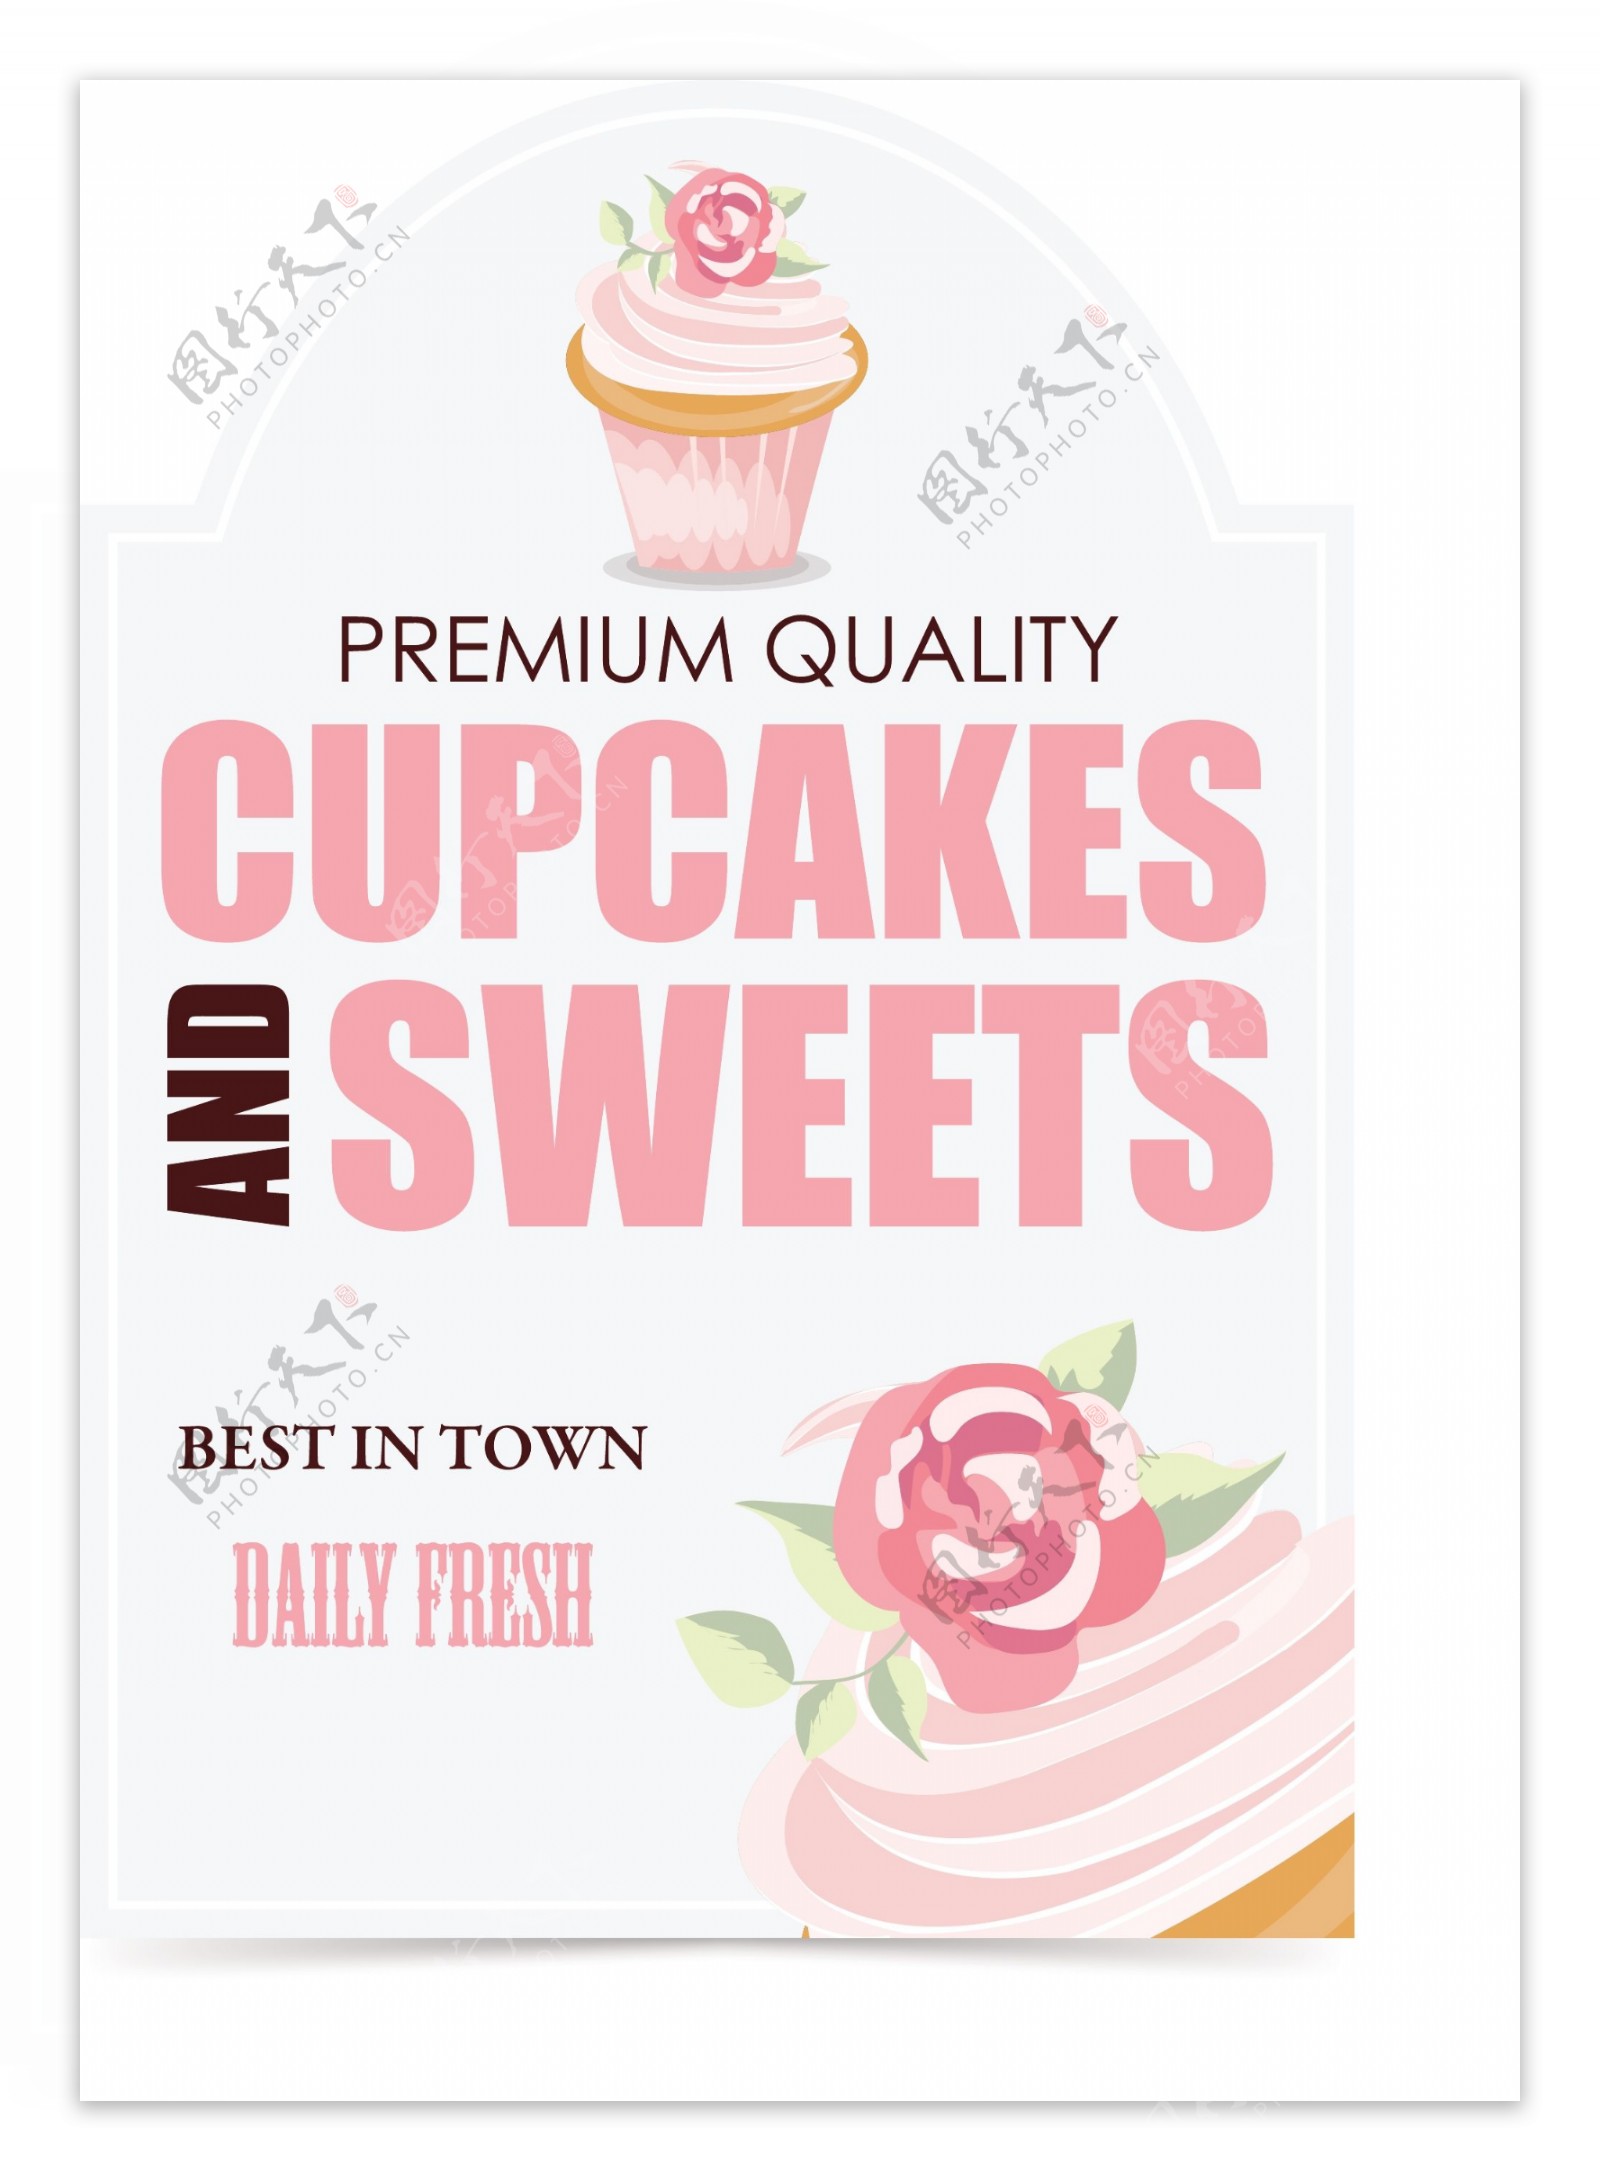 粉色蛋糕店铺卡通图标矢量素材